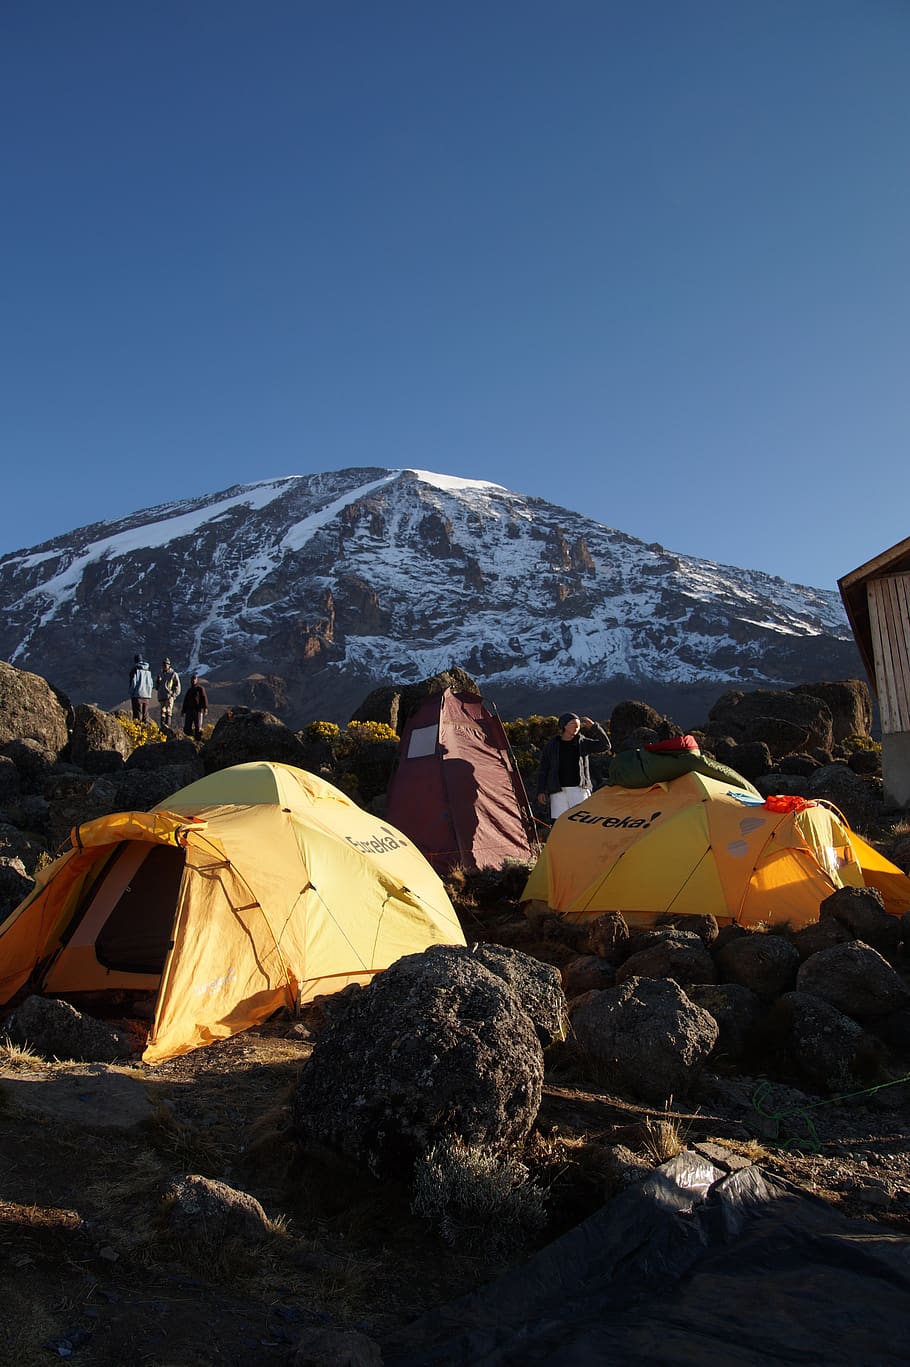 kilimanjaro, mountain, mountains, tent, air, nature, africa, yellow, tanzania, mountaineering